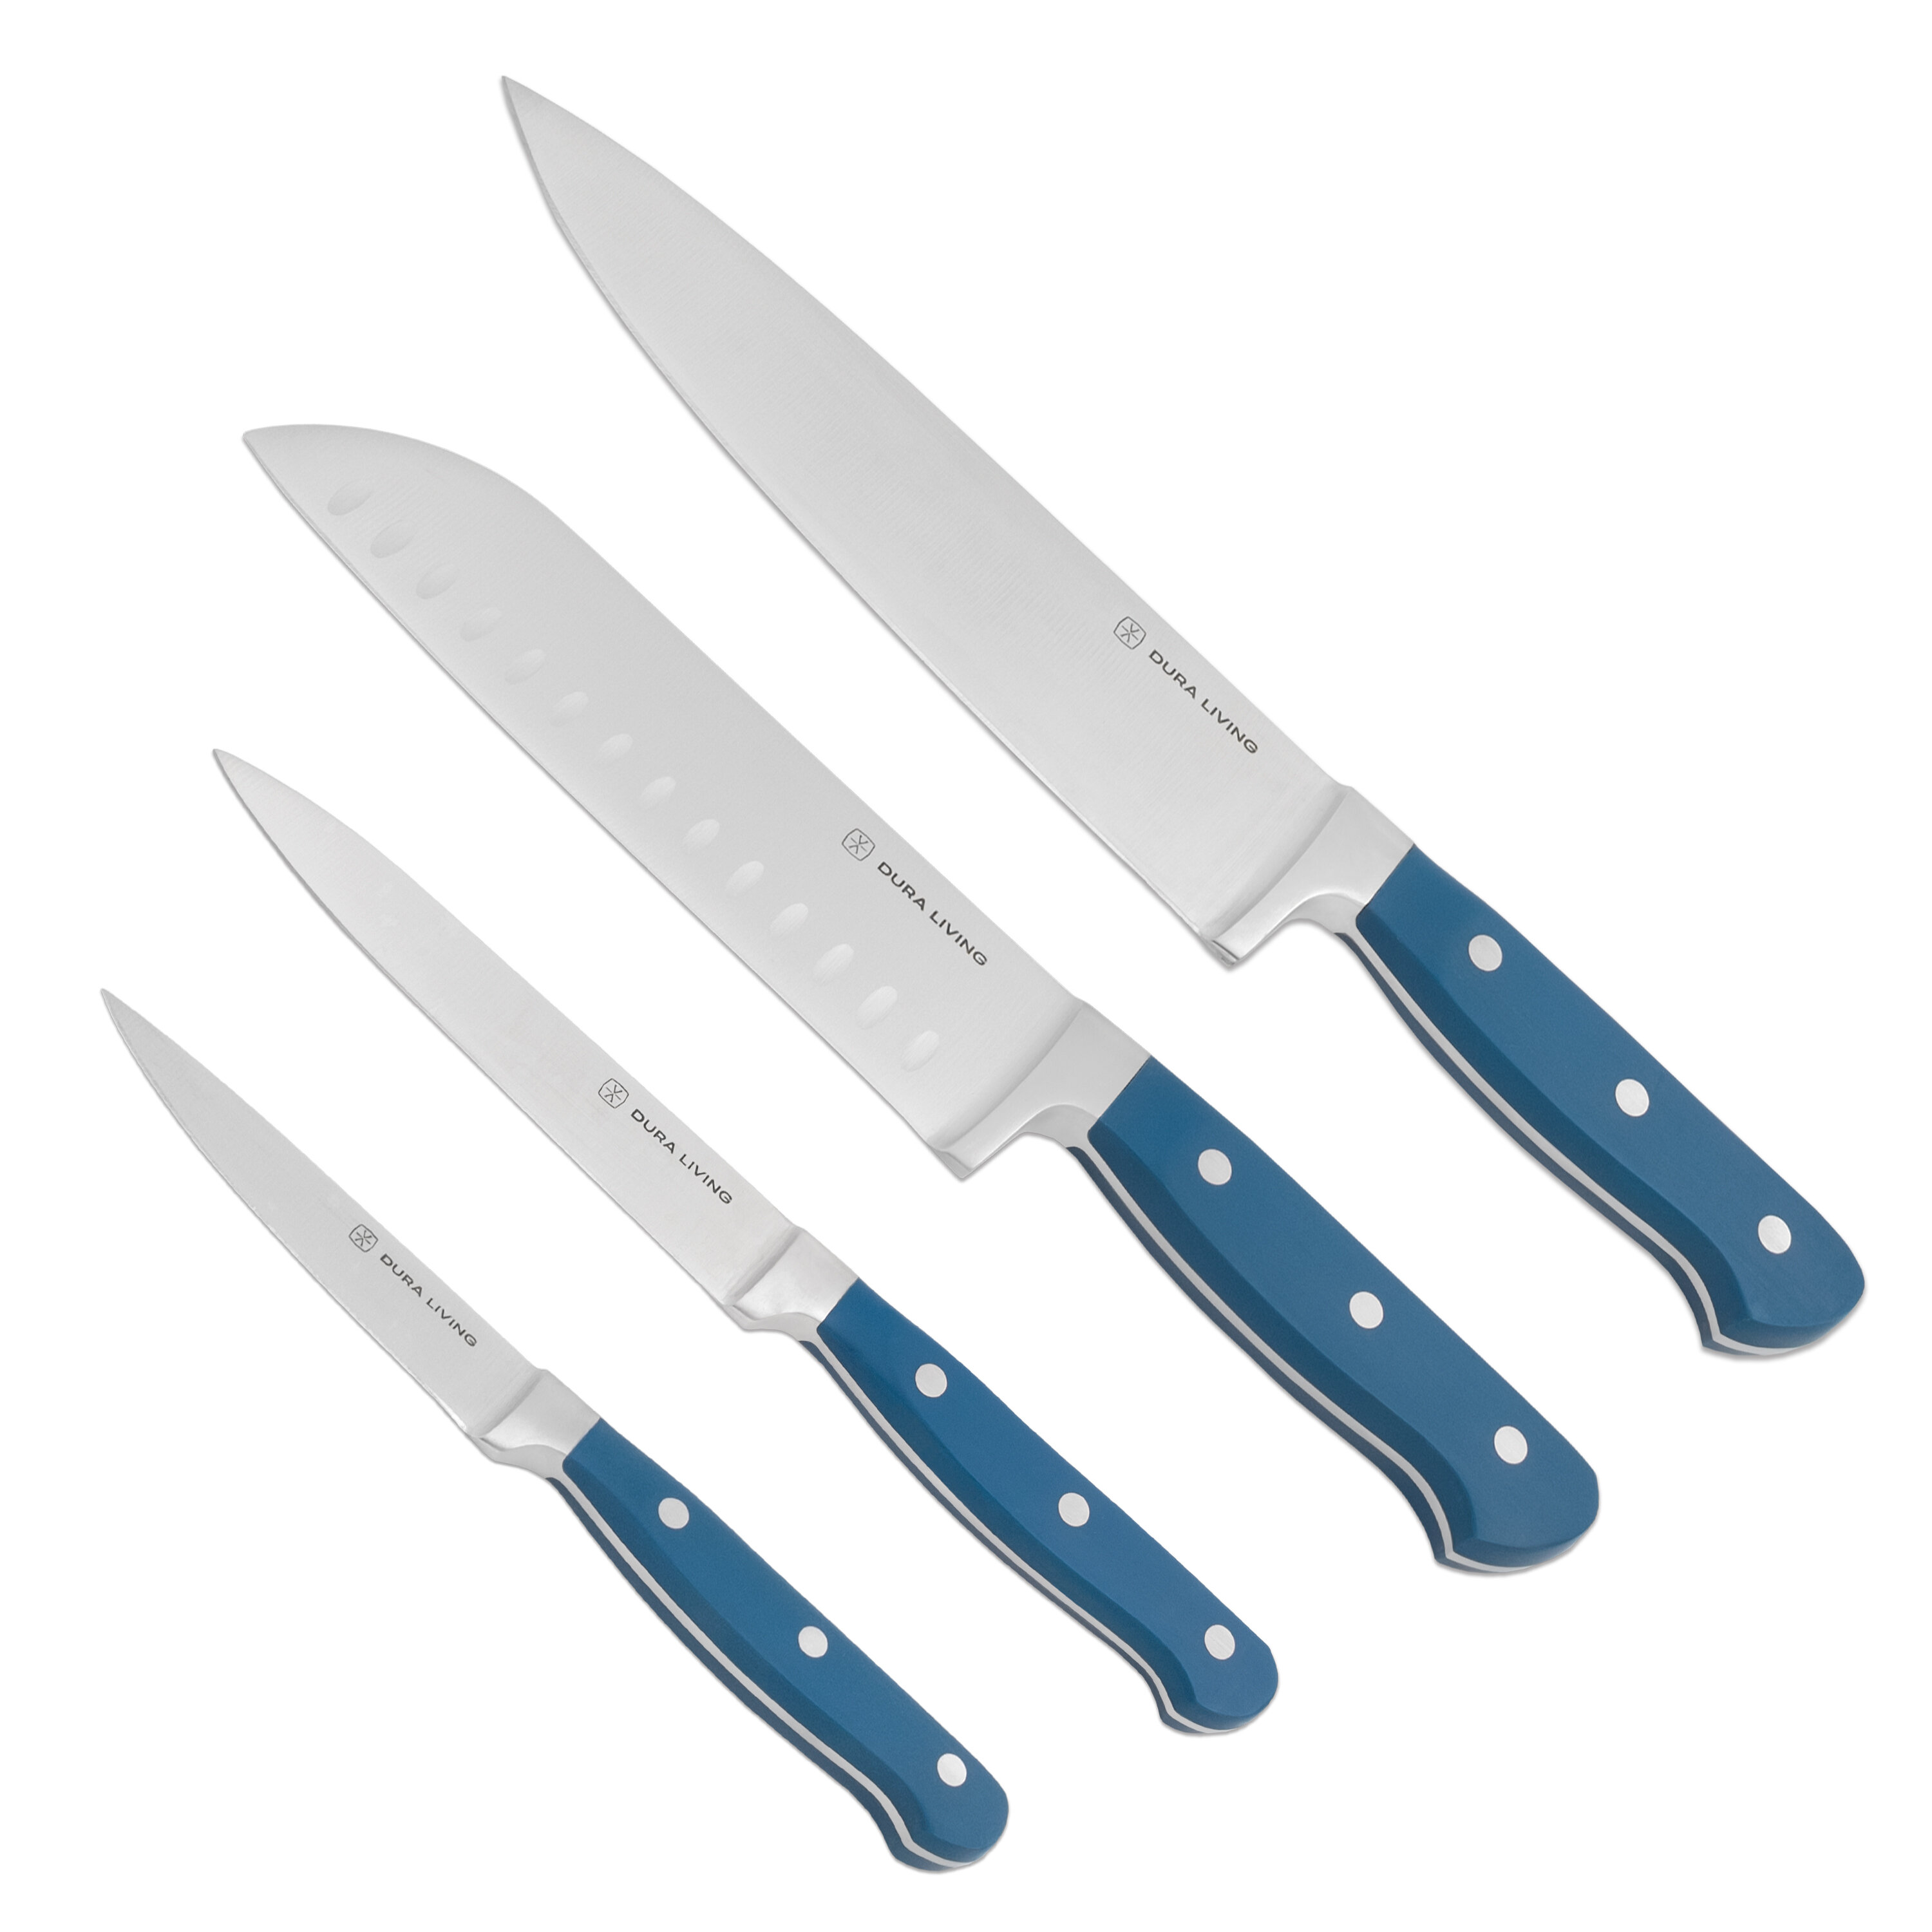 https://assets.wfcdn.com/im/28507776/compr-r85/2000/200093129/dura-living-4-piece-high-carbon-stainless-steel-assorted-knife-set.jpg